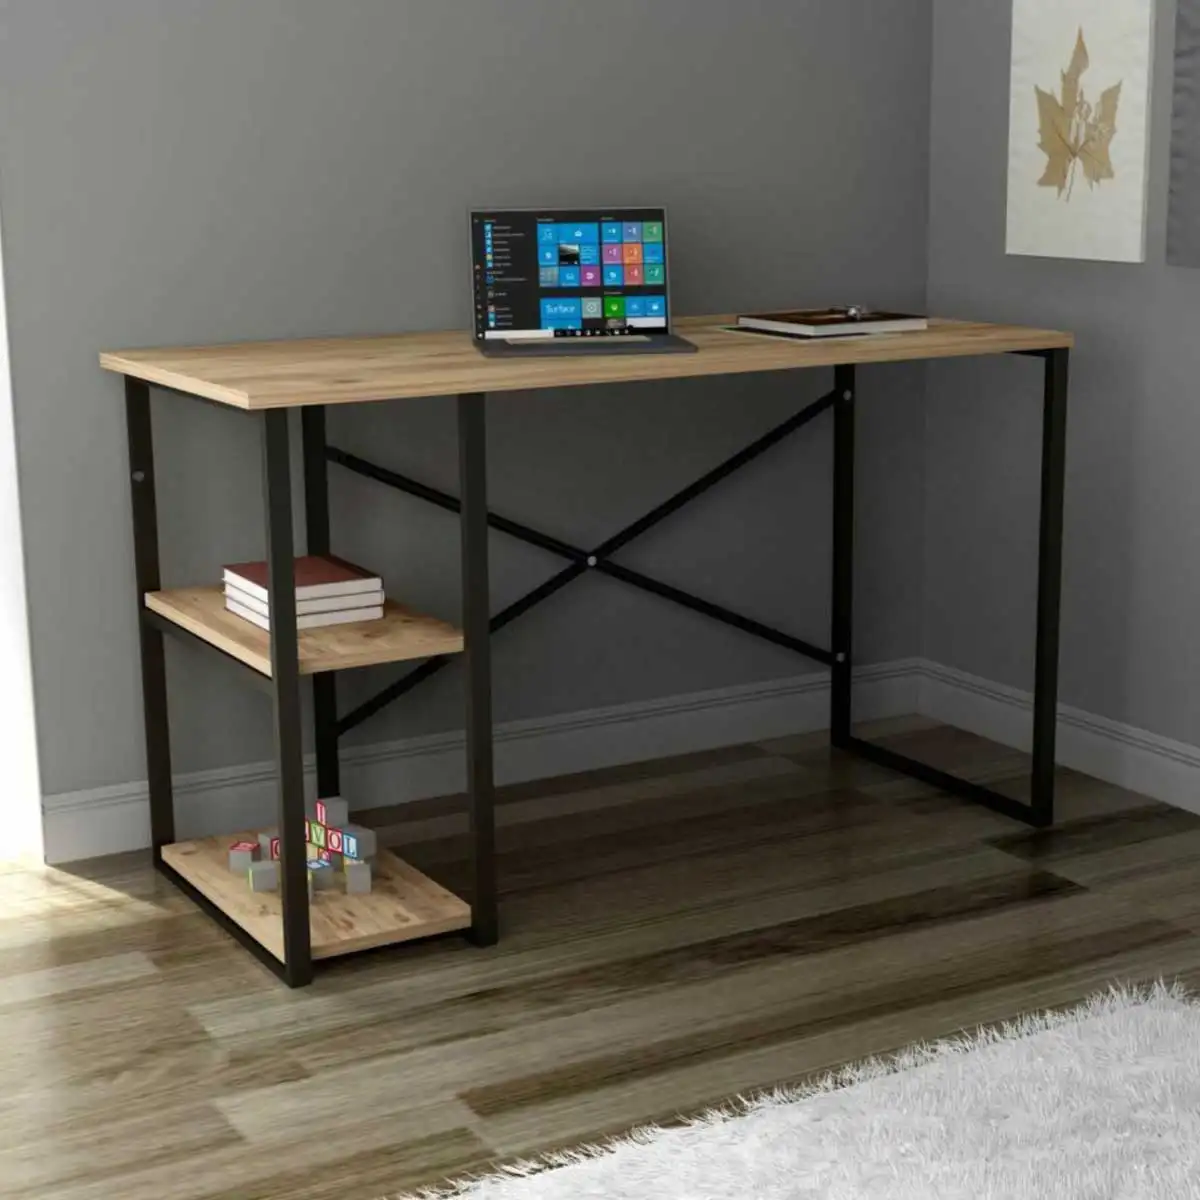 Mobilier de bureau moderne pour table de travail Fournisseur de mobilier de bureau turc